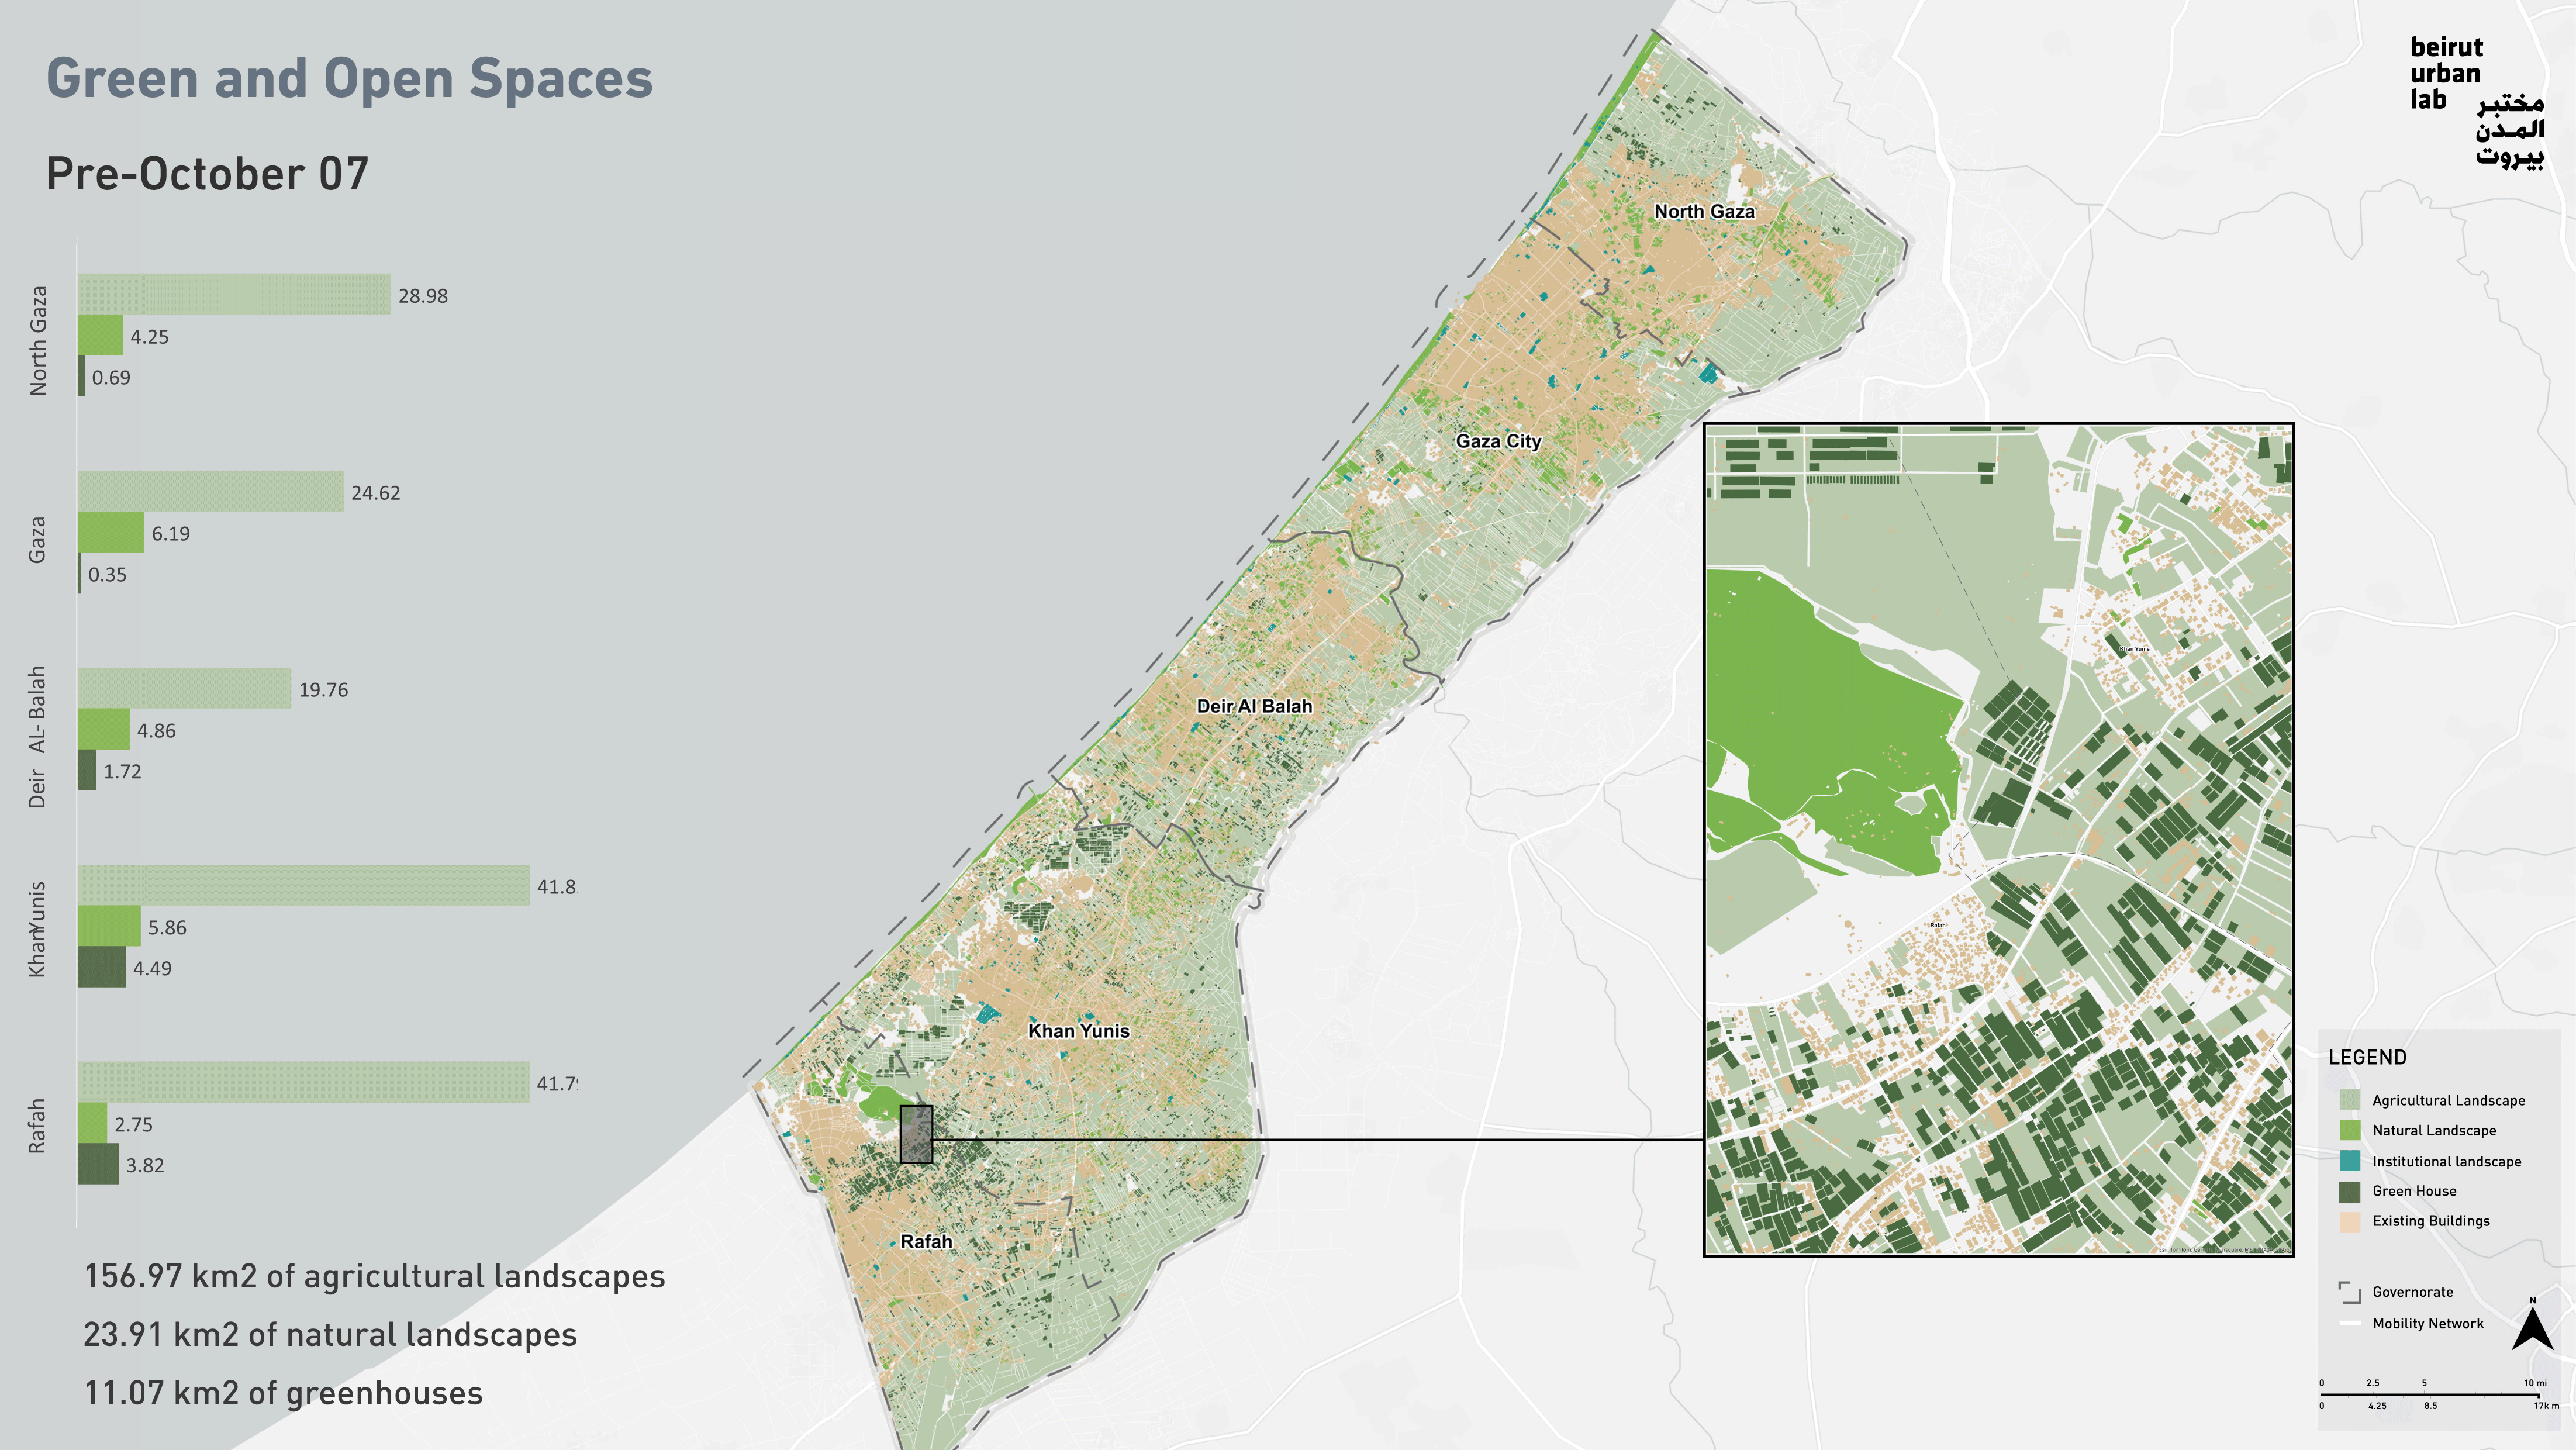 الأضرار اللاحقة بالمساحات الخضراء/المفتوحة في غزة. المصدر: مختبر المدن في بيروت بالاستناد إلى بيانات من يونوسات  UNOSAT